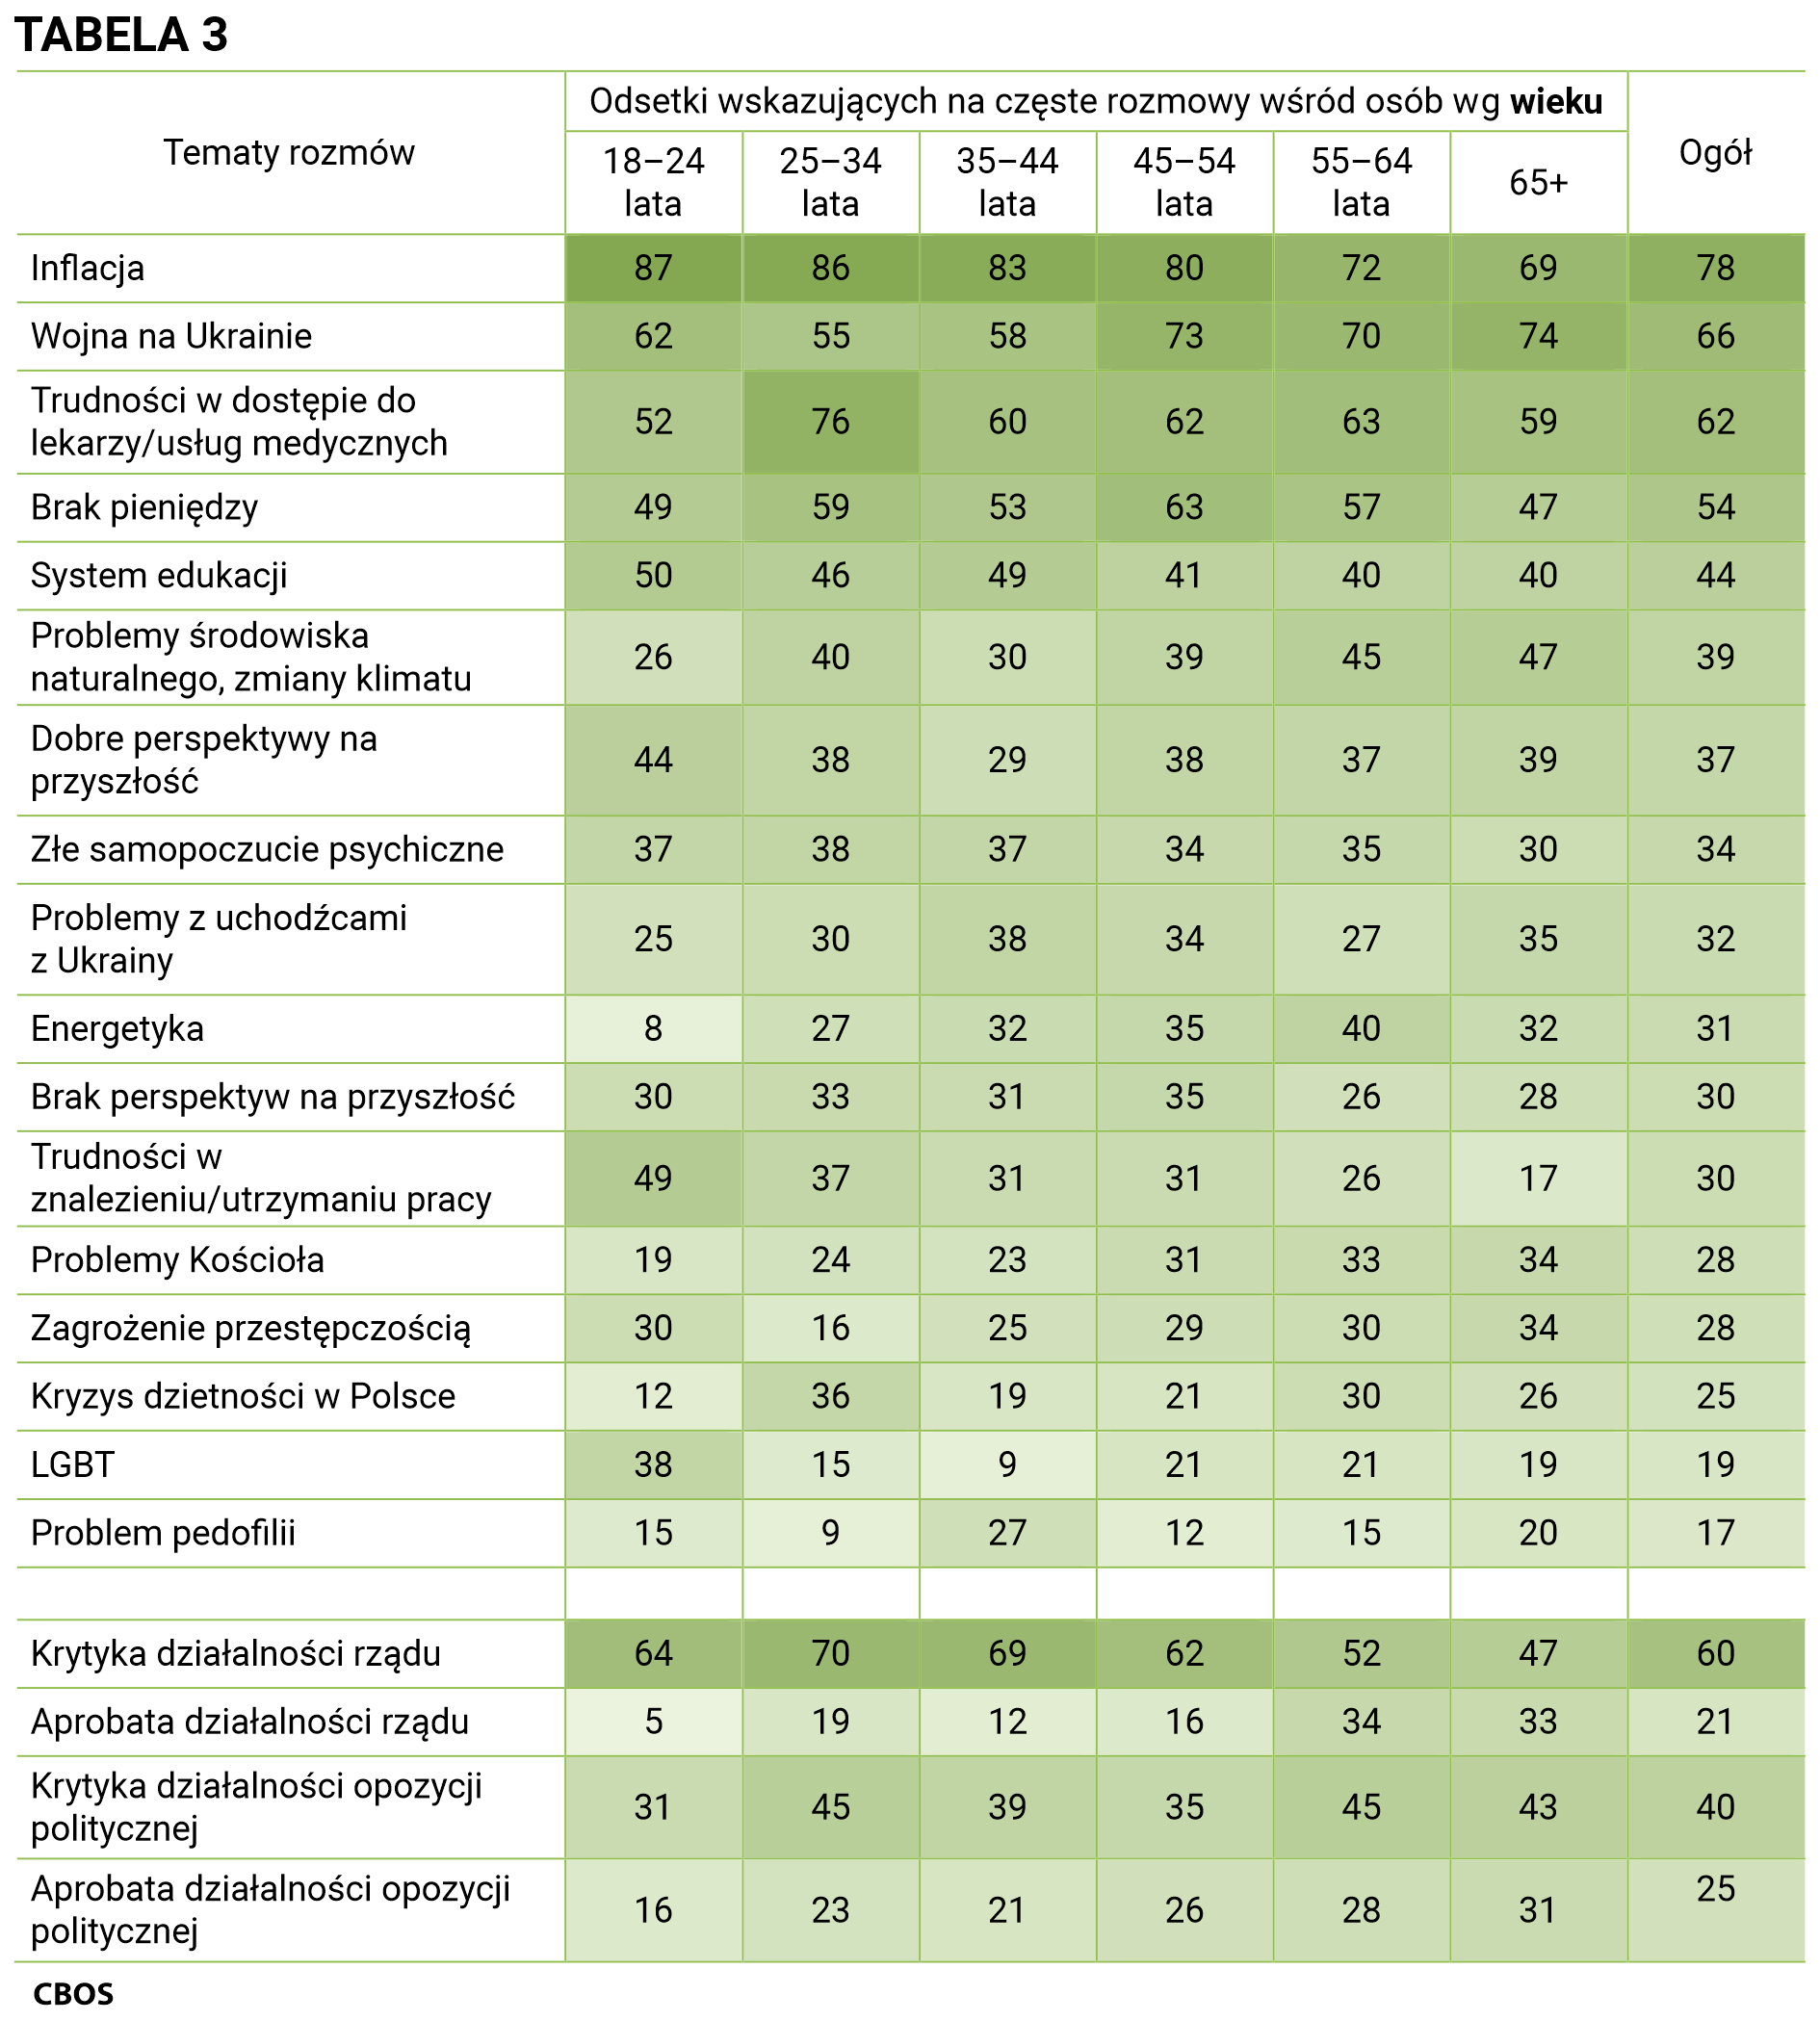 Tabela 3 Tematy rozmów i odsetki wskazujących na częste rozmowy wśród osób według wieku. Inflacja - Ogół (78%), 18–24 lata (87%), 25–34 lata (86%), 35–44 lata (83%), 45–54 lata (80%), 55–64 lata (72%), 65 lat i więcej (69%); Wojna na Ukrainie - Ogół (66%), 18–24 lata (62%), 25–34 lata (55%), 35–44 lata (58%), 45–54 lata (73%), 55–64 lata (70%), 65 lat i więcej (74%); Trudności w dostępie do lekarzy/usług medycznych - Ogół (62%), 18–24 lata (52%), 25–34 lata (76%), 35–44 lata (60%), 45–54 lata (62%), 55–64 lata (63%), 65 lat i więcej (59%); Brak pieniędzy - Ogół (54%), 18–24 lata (49%), 25–34 lata (59%), 35–44 lata (53%), 45–54 lata (63%), 55–64 lata (57%), 65 lat i więcej (47%); System edukacji - Ogół (44%), 18–24 lata (50%), 25–34 lata (46%), 35–44 lata (49%), 45–54 lata (41%), 55–64 lata (40%), 65 lat i więcej (40%); Problemy środowiska naturalnego, zmiany klimatu - Ogół (39%), 18–24 lata (26%), 25–34 lata (40%), 35–44 lata (30%), 45–54 lata (39%), 55–64 lata (45%), 65 lat i więcej (47%); Dobre perspektywy na przyszłość - Ogół (37%), 18–24 lata (44%), 25–34 lata (38%), 35–44 lata (29%), 45–54 lata (38%), 55–64 lata (37%), 65 lat i więcej (39%); Złe samopoczucie psychiczne - Ogół (34%), 18–24 lata (37%), 25–34 lata (38%), 35–44 lata (37%), 45–54 lata (34%), 55–64 lata (35%), 65 lat i więcej (30%); Problemy z uchodźcami z Ukrainy - Ogół (32%), 18–24 lata (25%), 25–34 lata (30%), 35–44 lata (38%), 45–54 lata (34%), 55–64 lata (27%), 65 lat i więcej (35%); Energetyka - Ogół (31%), 18–24 lata (8%), 25–34 lata (27%), 35–44 lata (32%), 45–54 lata (35%), 55–64 lata (40%), 65 lat i więcej (32%); Brak perspektyw na przyszłość - Ogół (30%), 18–24 lata (30%), 25–34 lata (33%), 35–44 lata (31%), 45–54 lata (35%), 55–64 lata (26%), 65 lat i więcej (28%); Trudności w znalezieniu/utrzymaniu pracy - Ogół (30%), 18–24 lata (49%), 25–34 lata (37%), 35–44 lata (31%), 45–54 lata (31%), 55–64 lata (26%), 65 lat i więcej (17%); Problemy Kościoła - Ogół (28%), 18–24 lata (19%), 25–34 lata (24%), 35–44 lata (23%), 45–54 lata (31%), 55–64 lata (33%), 65 lat i więcej (34%); Zagrożenie przestępczością - Ogół (28%), 18–24 lata (30%), 25–34 lata (16%), 35–44 lata (25%), 45–54 lata (29%), 55–64 lata (30%), 65 lat i więcej (34%); Kryzys dzietności w Polsce: Ogół (25%), 18–24 lata (12%), 25–34 lata (36%), 35–44 lata (19%), 45–54 lata (21%), 55–64 lata (30%), 65 lat i więcej (26%); LGBT - Ogół (19%), 18–24 lata (38%), 25–34 lata (15%), 35–44 lata (9%), 45–54 lata (21%), 55–64 lata (21%), 65 lat i więcej (19%); Problem pedofilii - Ogół (17%), 18–24 lata (15%), 25–34 lata (9%), 35–44 lata (27%), 45–54 lata (12%), 55–64 lata (15%), 65 lat i więcej (20%); Krytyka działalności rządu - Ogół (60%), 18–24 lata (64%), 25–34 lata (70%), 35–44 lata (69%), 45–54 lata (62%), 55–64 lata (52%), 65 lat i więcej (47%); Aprobata działalności rządu - Ogół (21%), 18–24 lata (5%), 25–34 lata (19%), 35–44 lata (12%), 45–54 lata (16%), 55–64 lata (34%), 65 lat i więcej (33%); Krytyka działalności opozycji politycznej - Ogół (40%), 18–24 lata (31%), 25–34 lata (45%), 35–44 lata (39%), 45–54 lata (35%), 55–64 lata (45%), 65 lat i więcej (43%); Aprobata działalności opozycji politycznej - Ogół (25%), 18–24 lata (16%), 25–34 lata (23%), 35–44 lata (21%), 45–54 lata (26%), 55–64 lata (28%), 65 lat i więcej (31%).